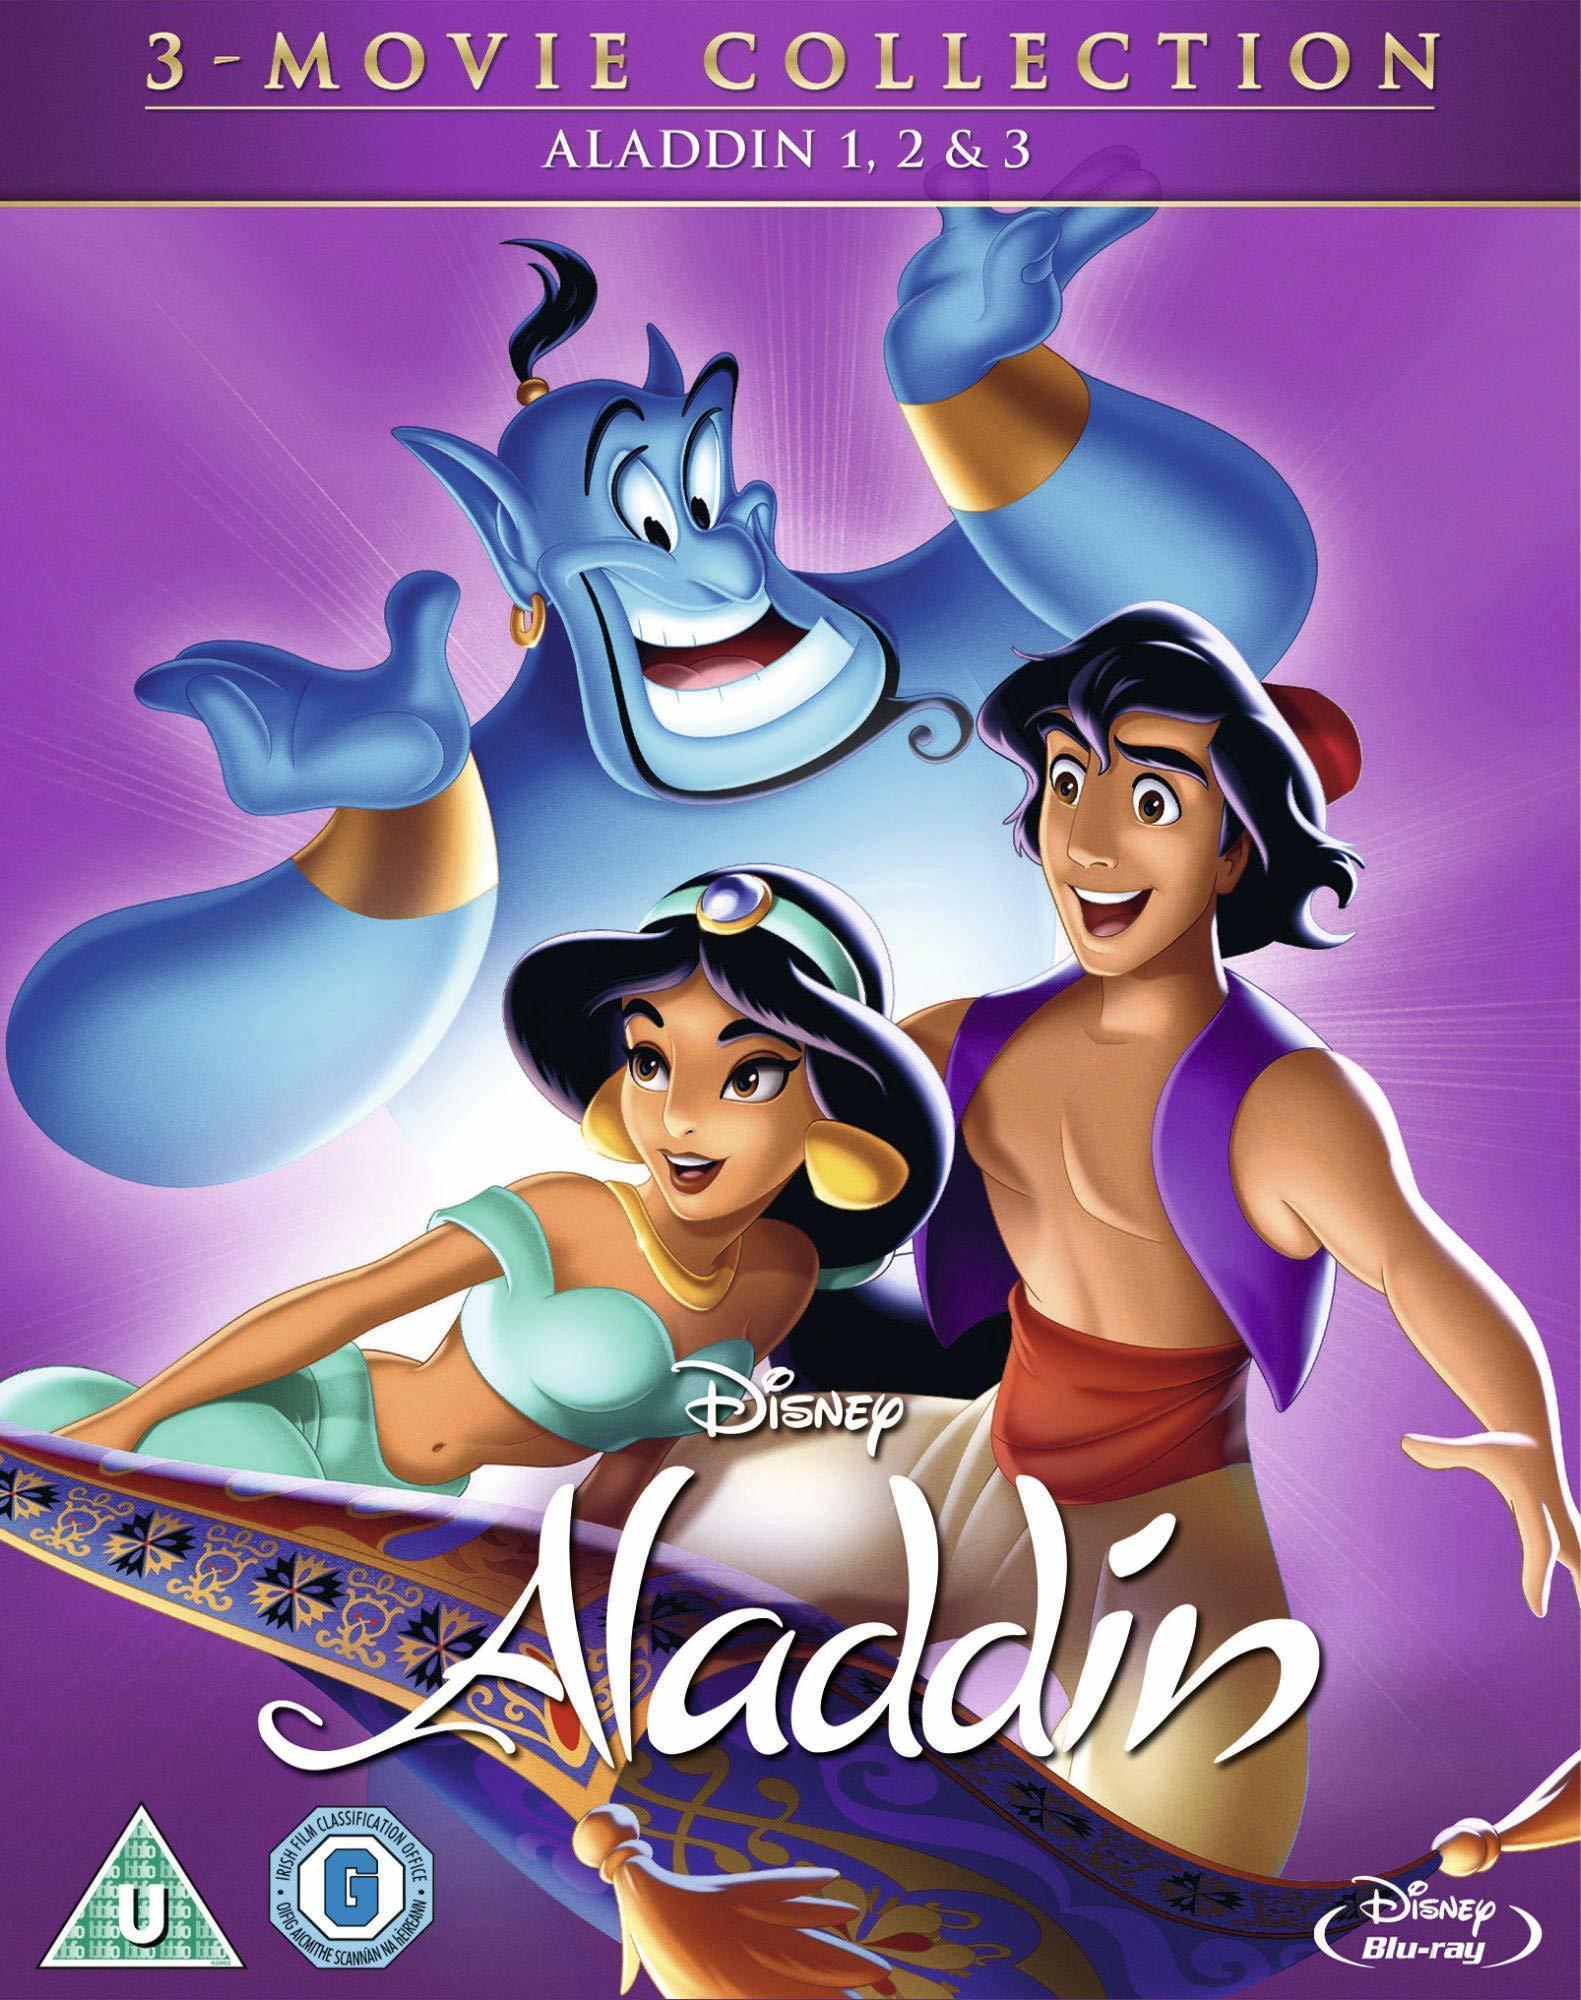 aladdin - Aladdin: 4-Movie Collection (1992-2019) Aladino: Colección de 4 Películas (1992-2019) [E-AC3/AC3 5.1/2.0 + SUP/SRT] [Blu Ray-Rip] [Disney Plus-Rip] 218188_front